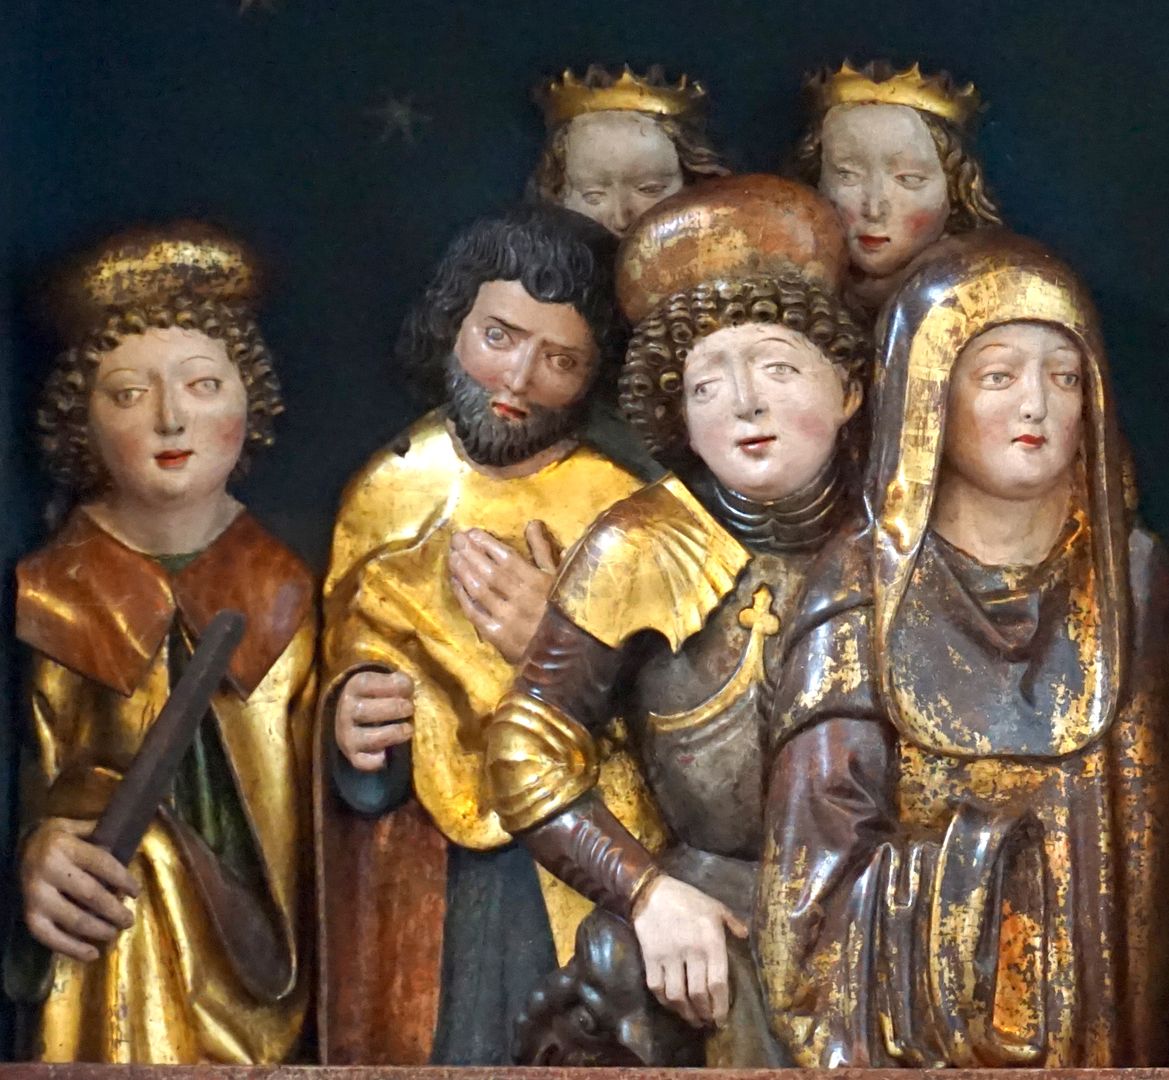 Annen- oder Sippen-Altar Predella, Heiligengruppe im linken Drittel, links der Hl. Dionysius ?, zweiter von rechts Hl. Georg mit Drachen